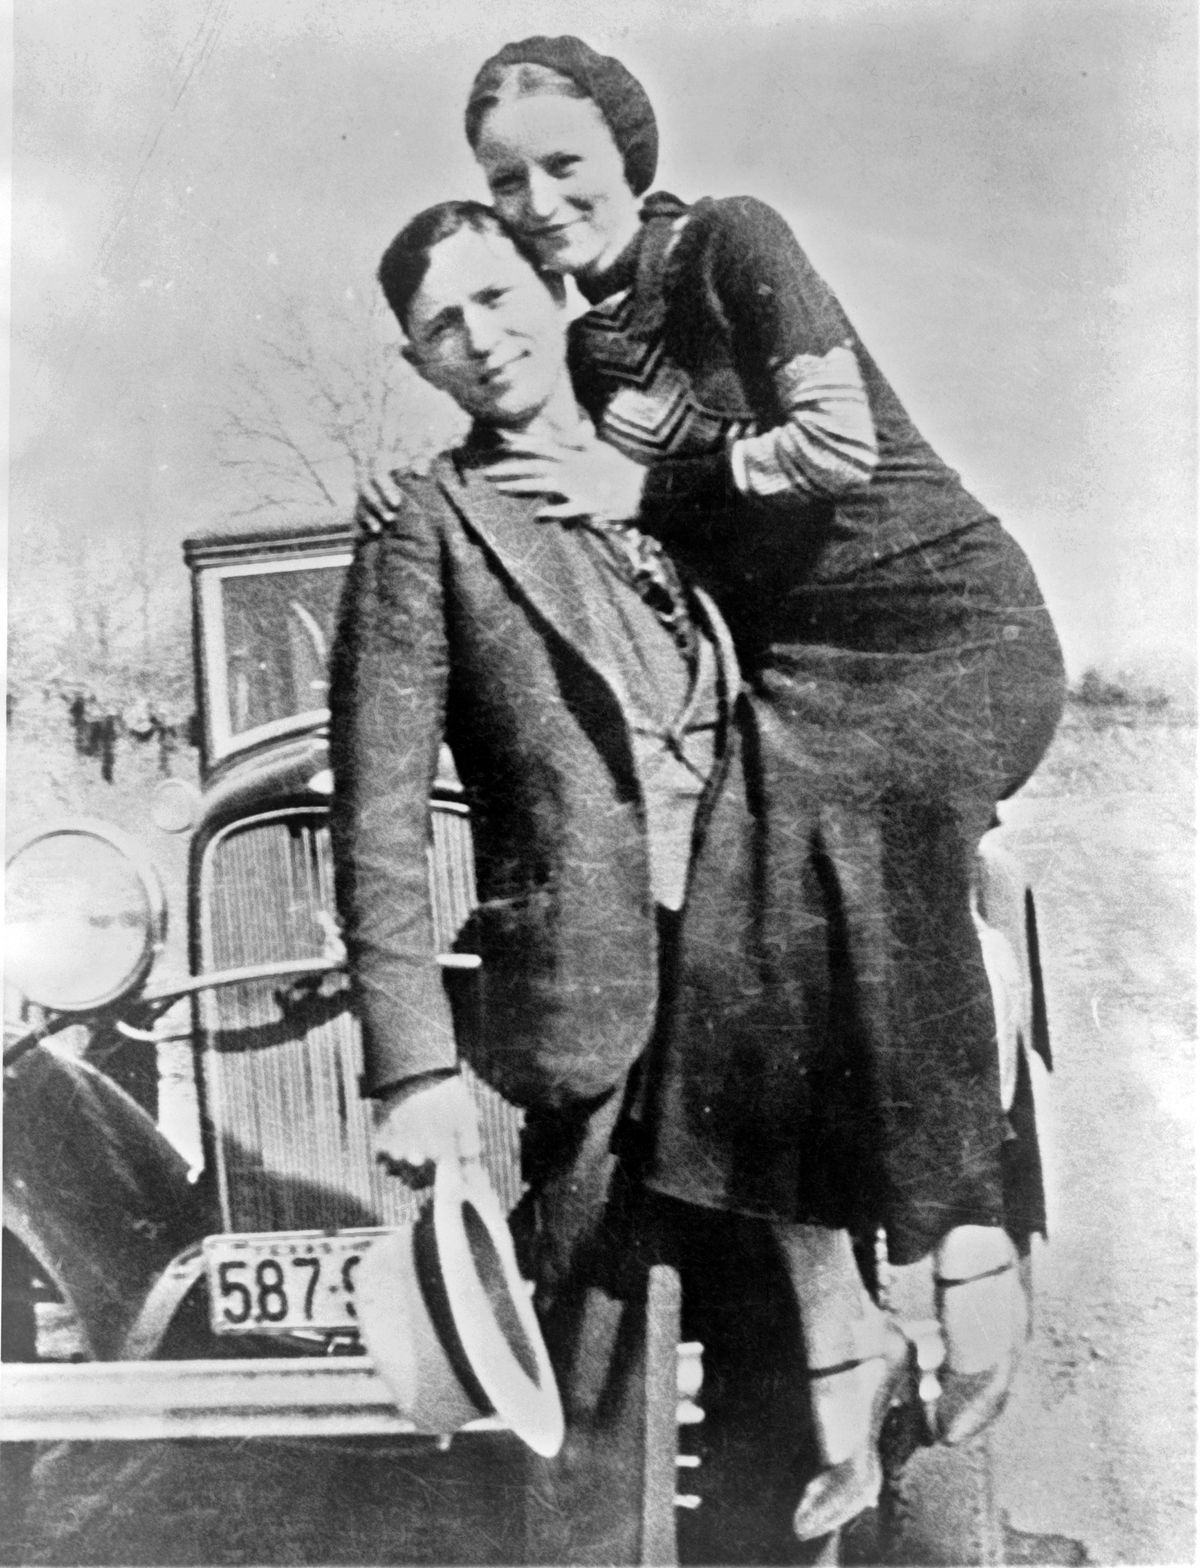 Nämä valokuvat kuvaavat Bonnie & Clyden todellista elämää